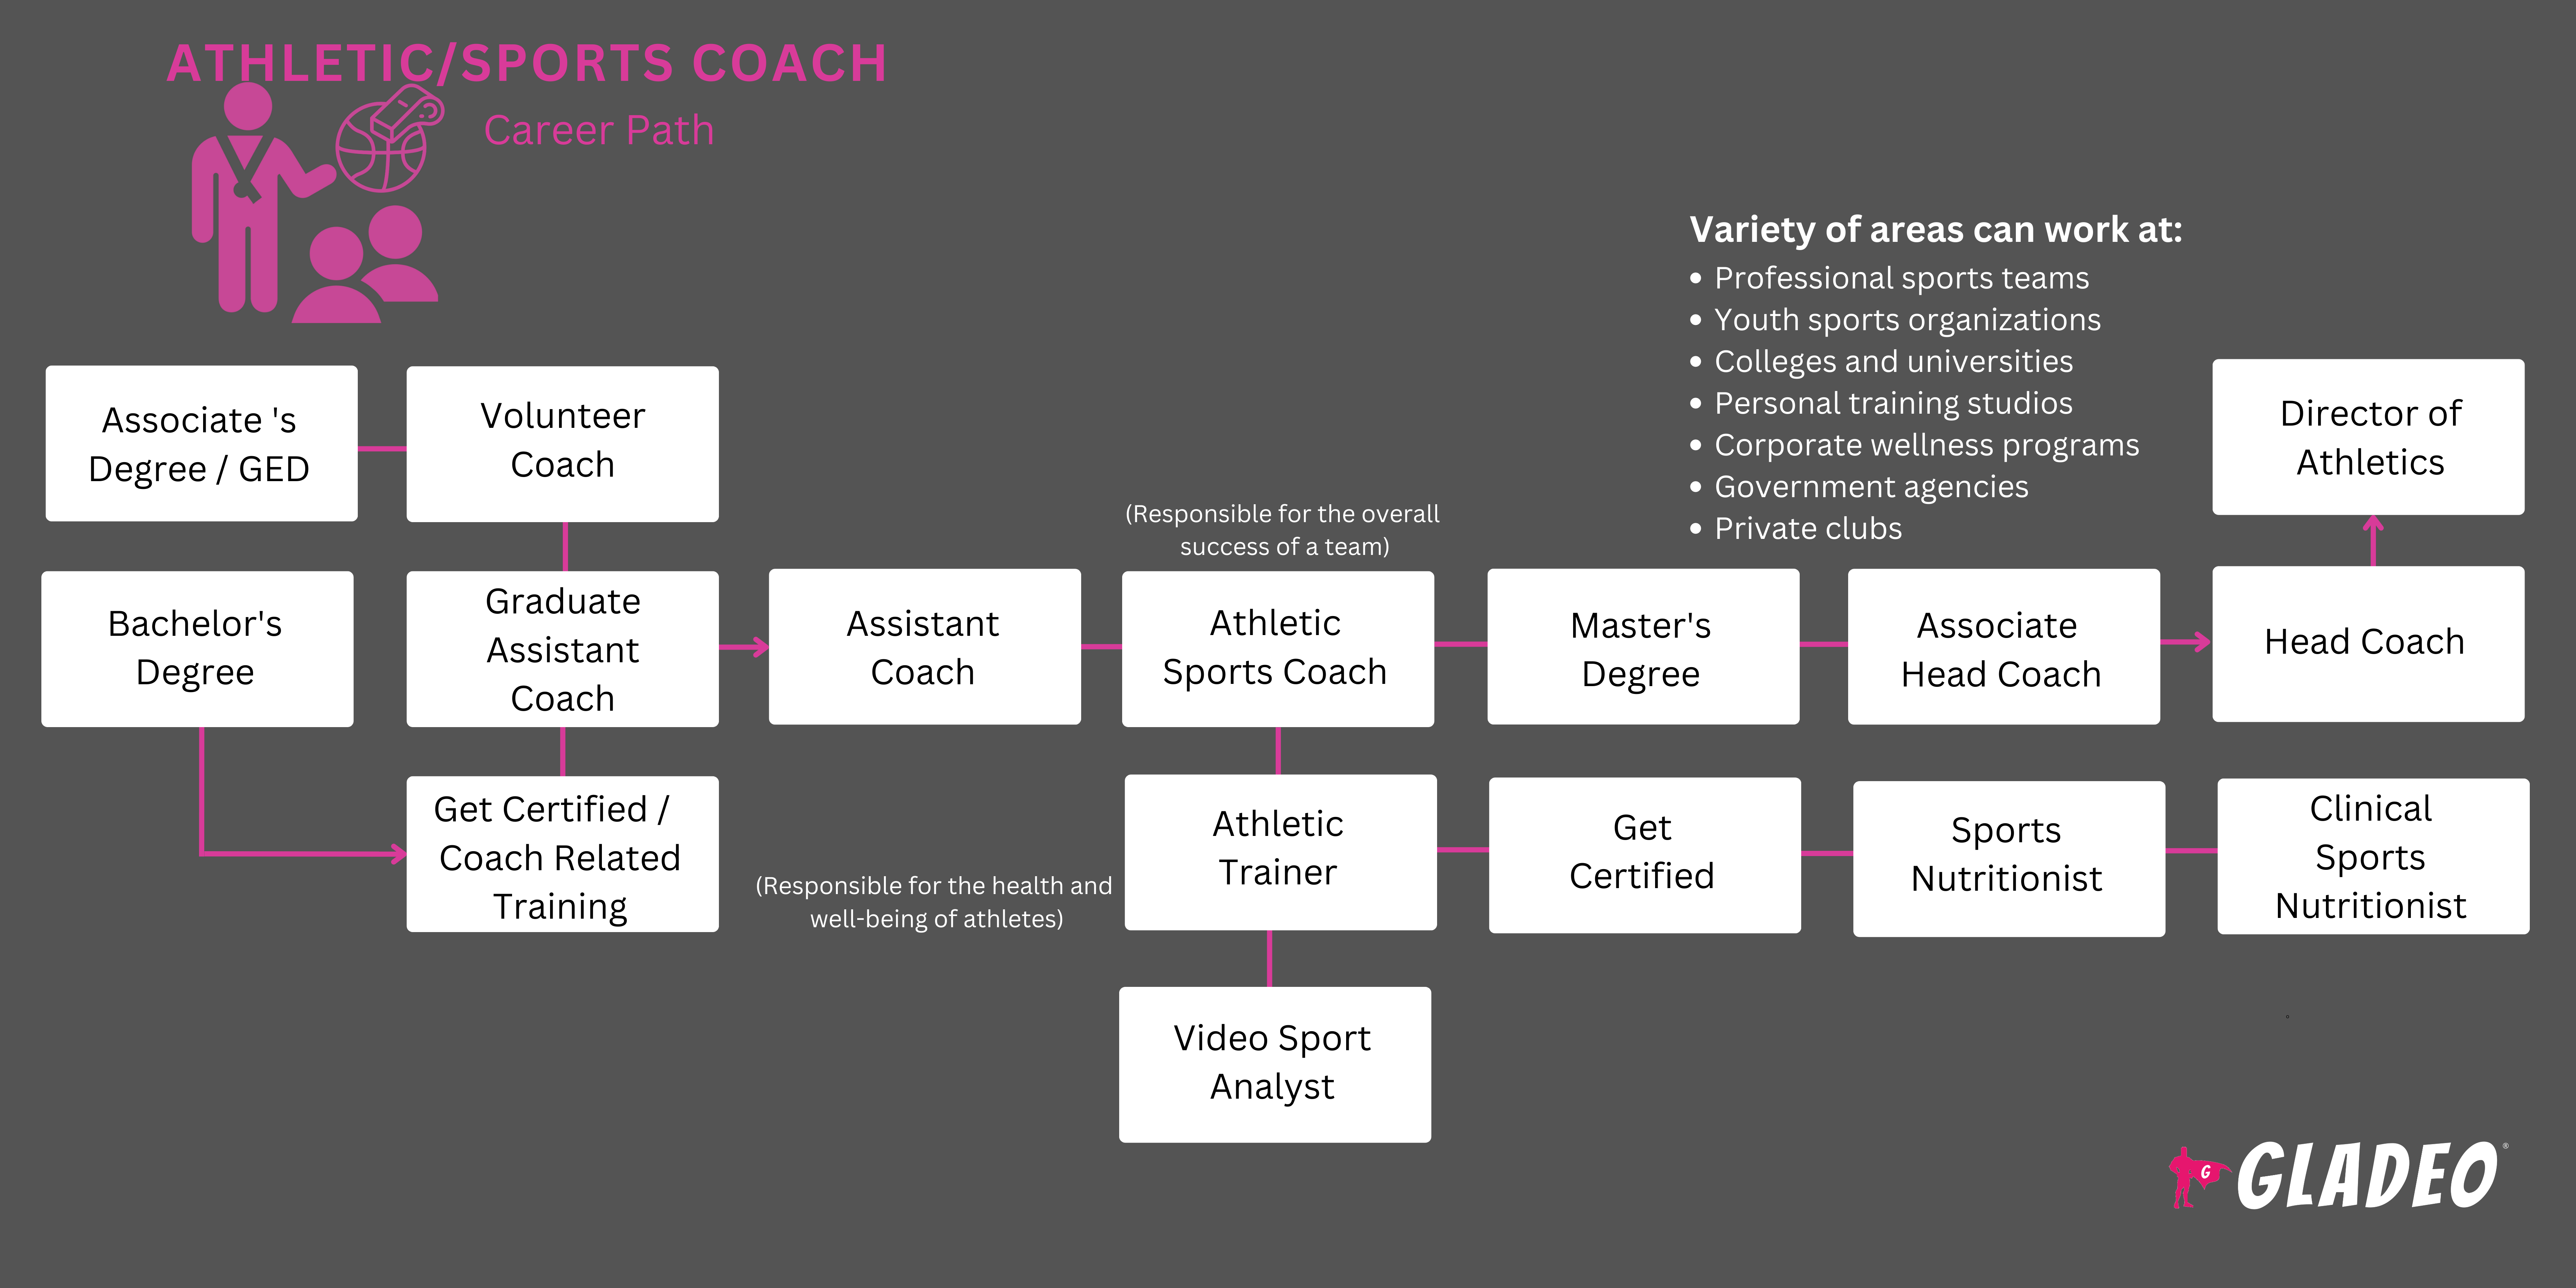 Hoja de ruta para entrenadores atléticos/deportivos